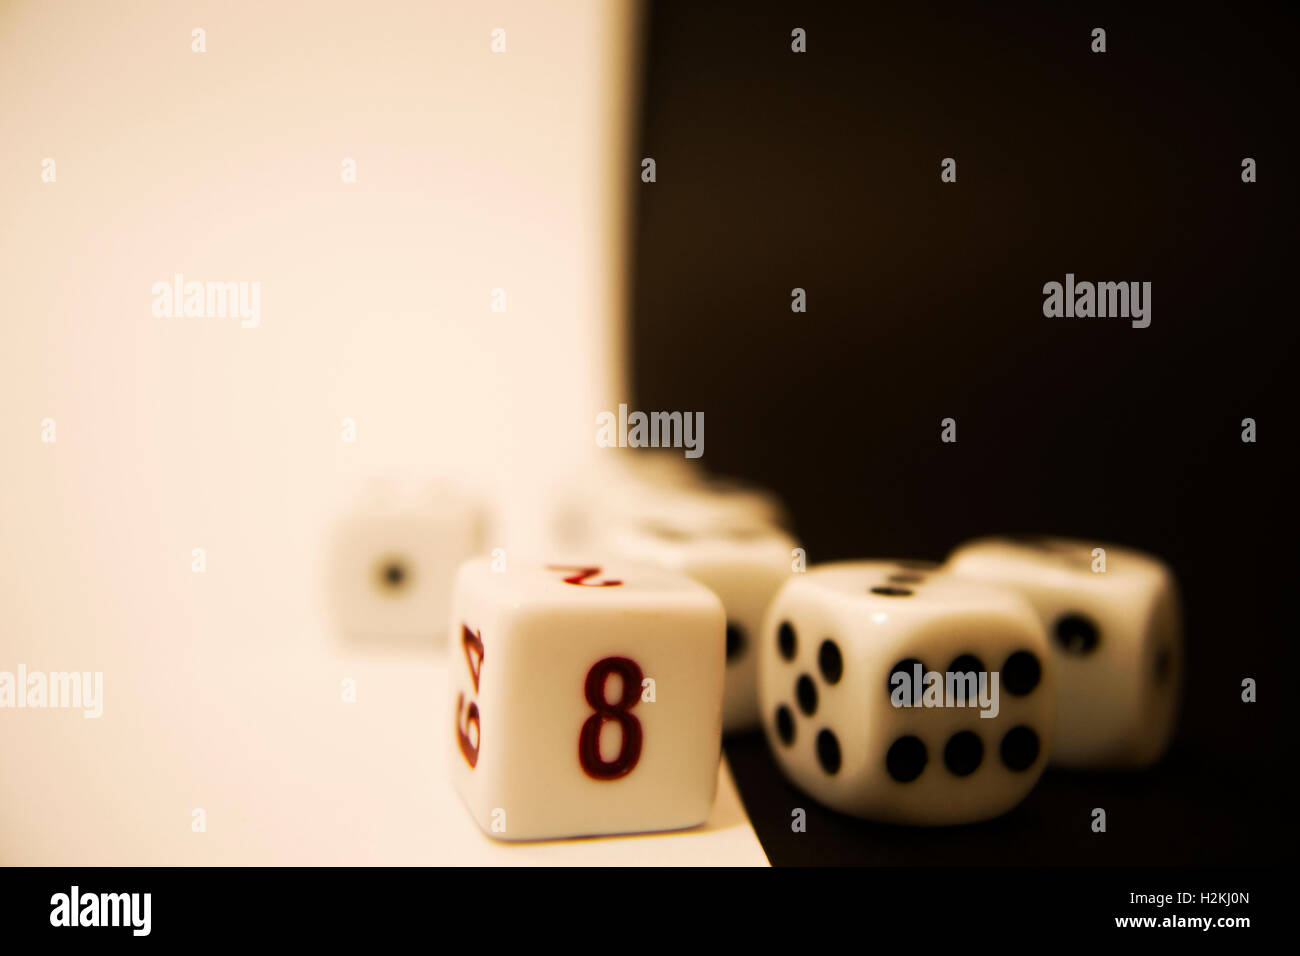 Gambling dados sobre fondo blanco y negro Foto de stock